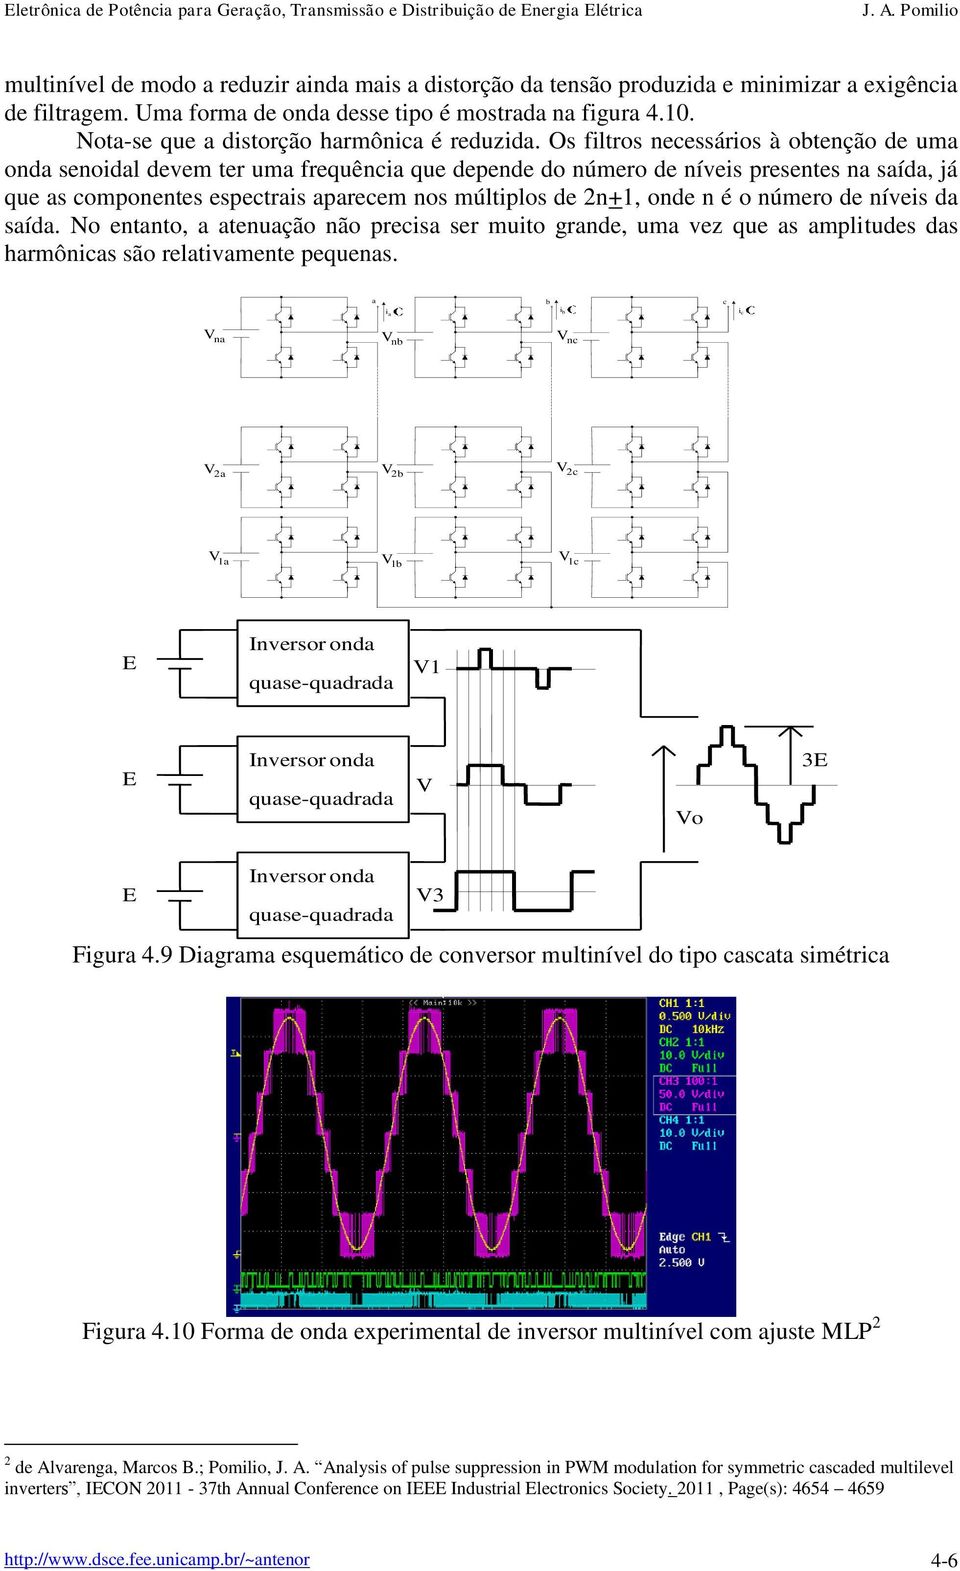 Os filtros necessários à obtenção de uma onda senoidal devem ter uma frequência que depende do número de níveis presentes na saída, já que as componentes espectrais aparecem nos múltiplos de 2n+1,